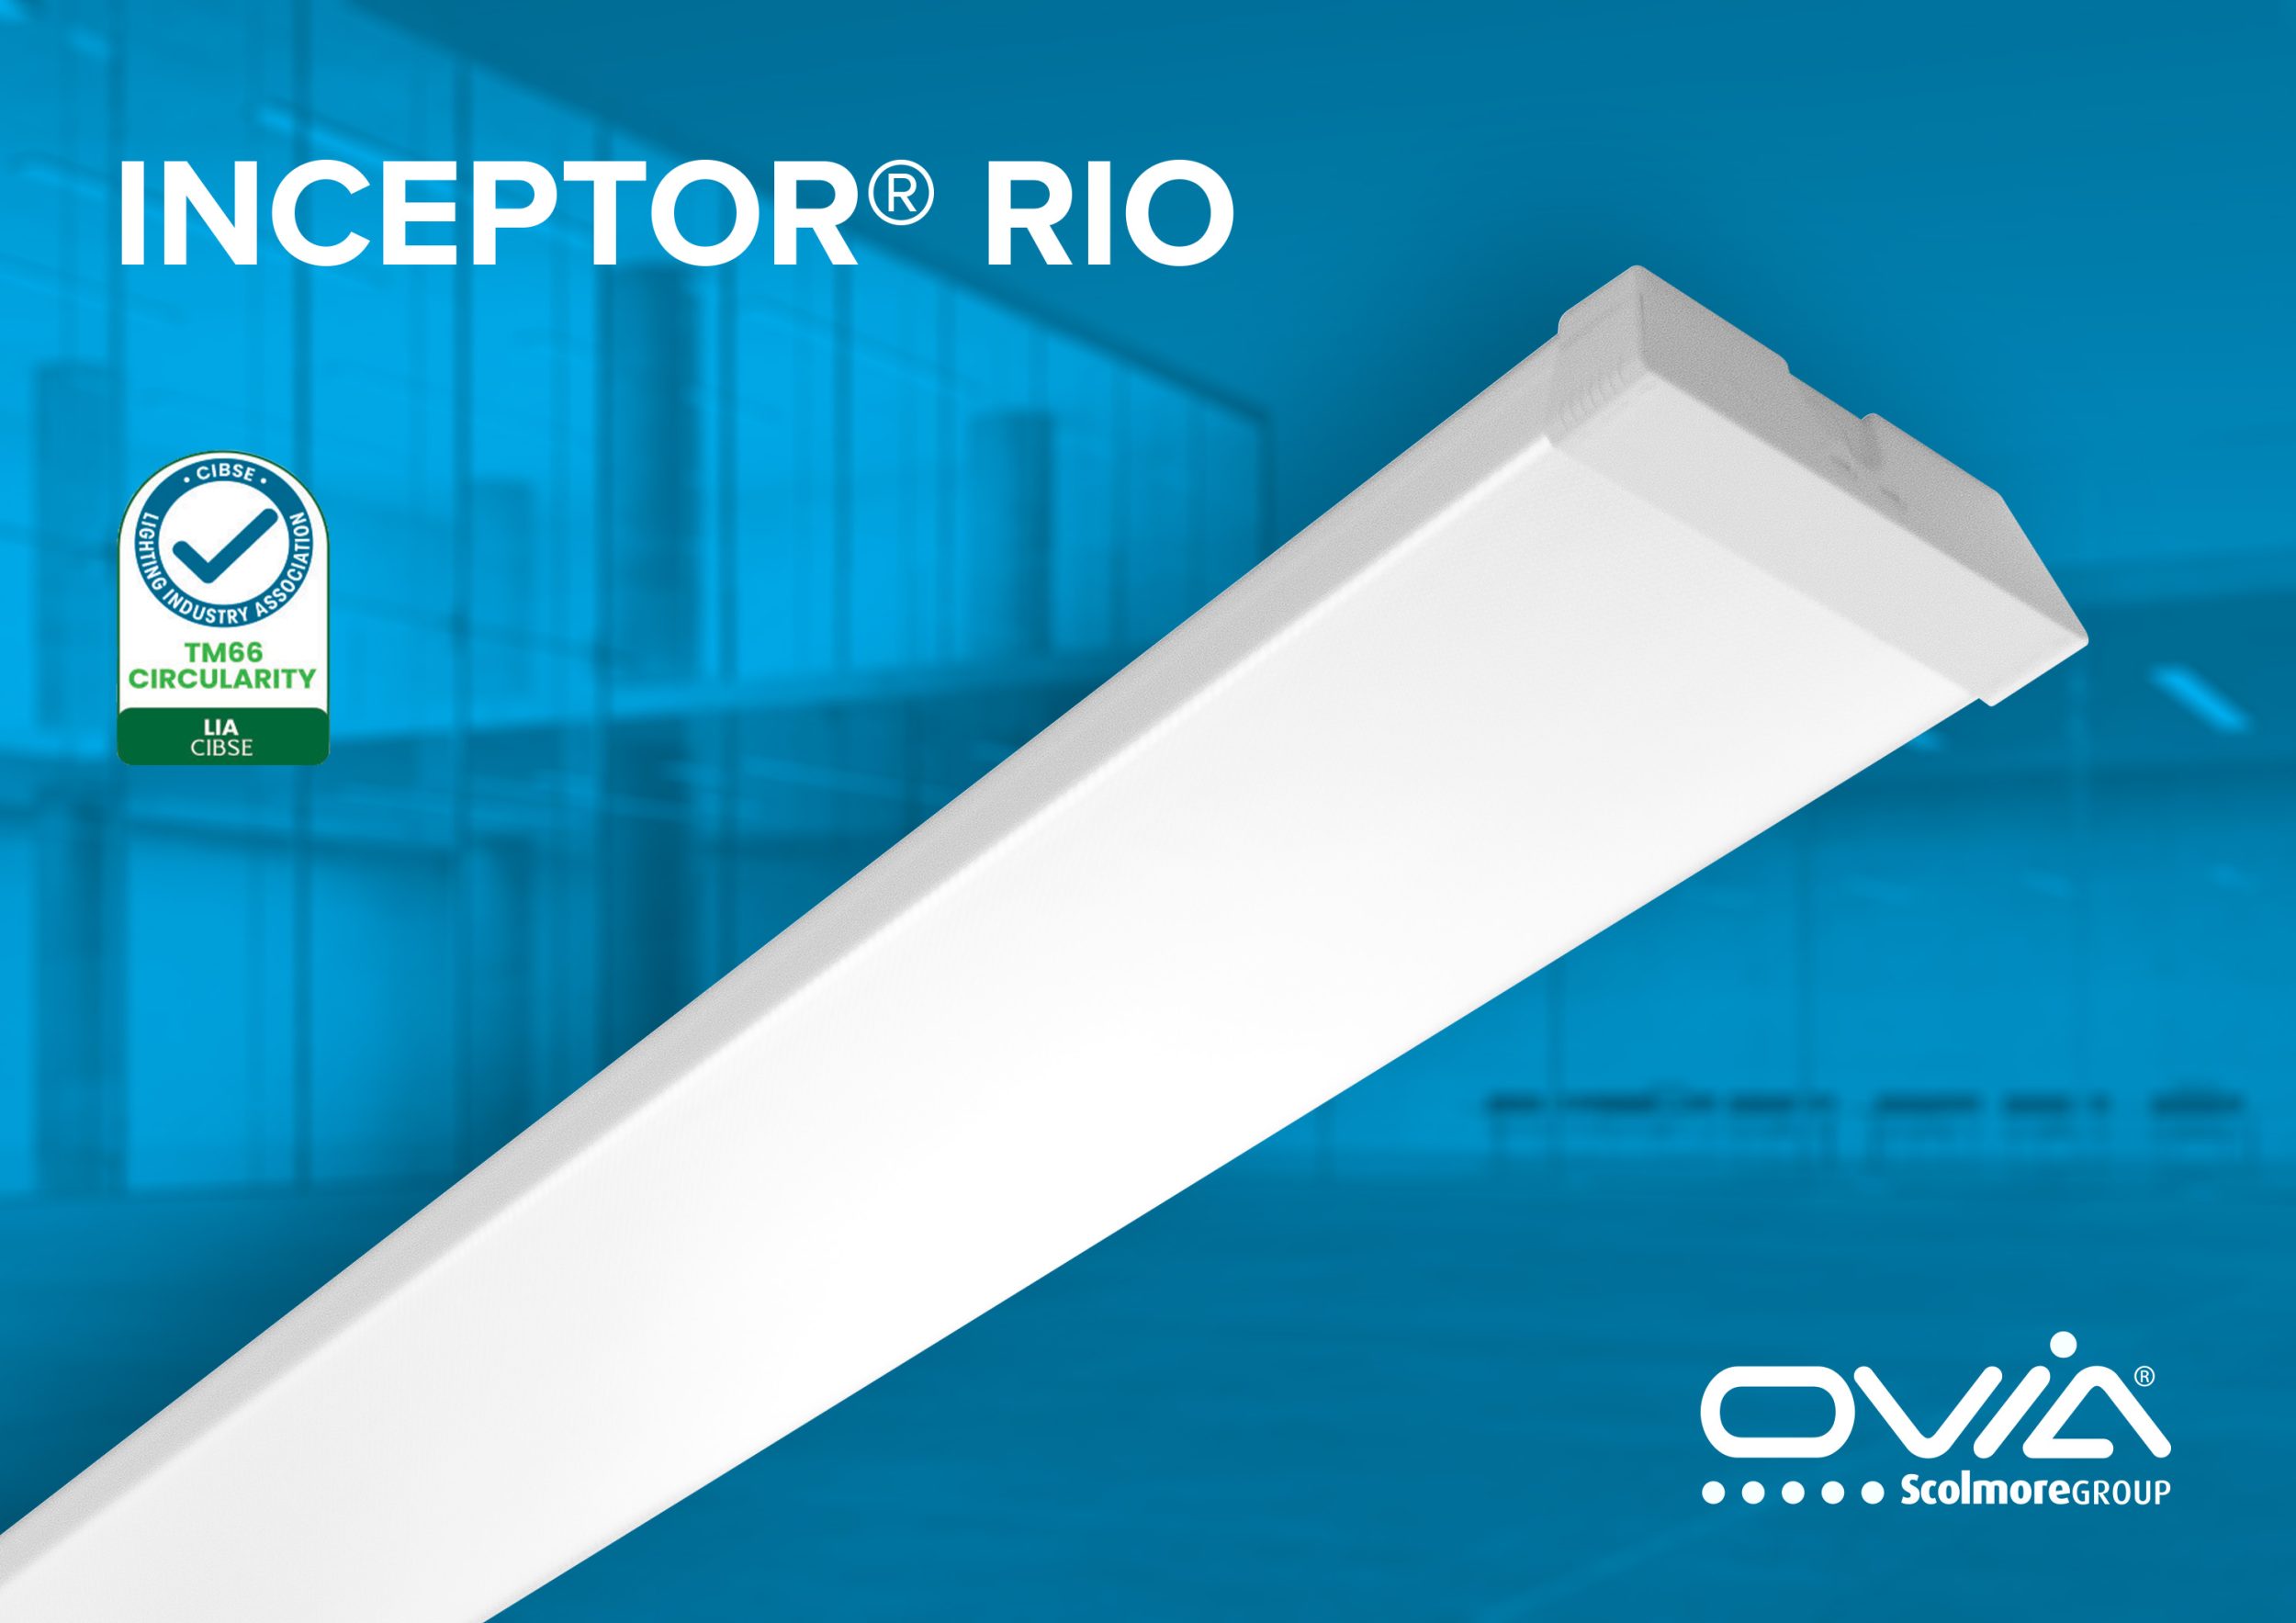 Ovia’s revolutionary new Inceptor Rio LED Batten